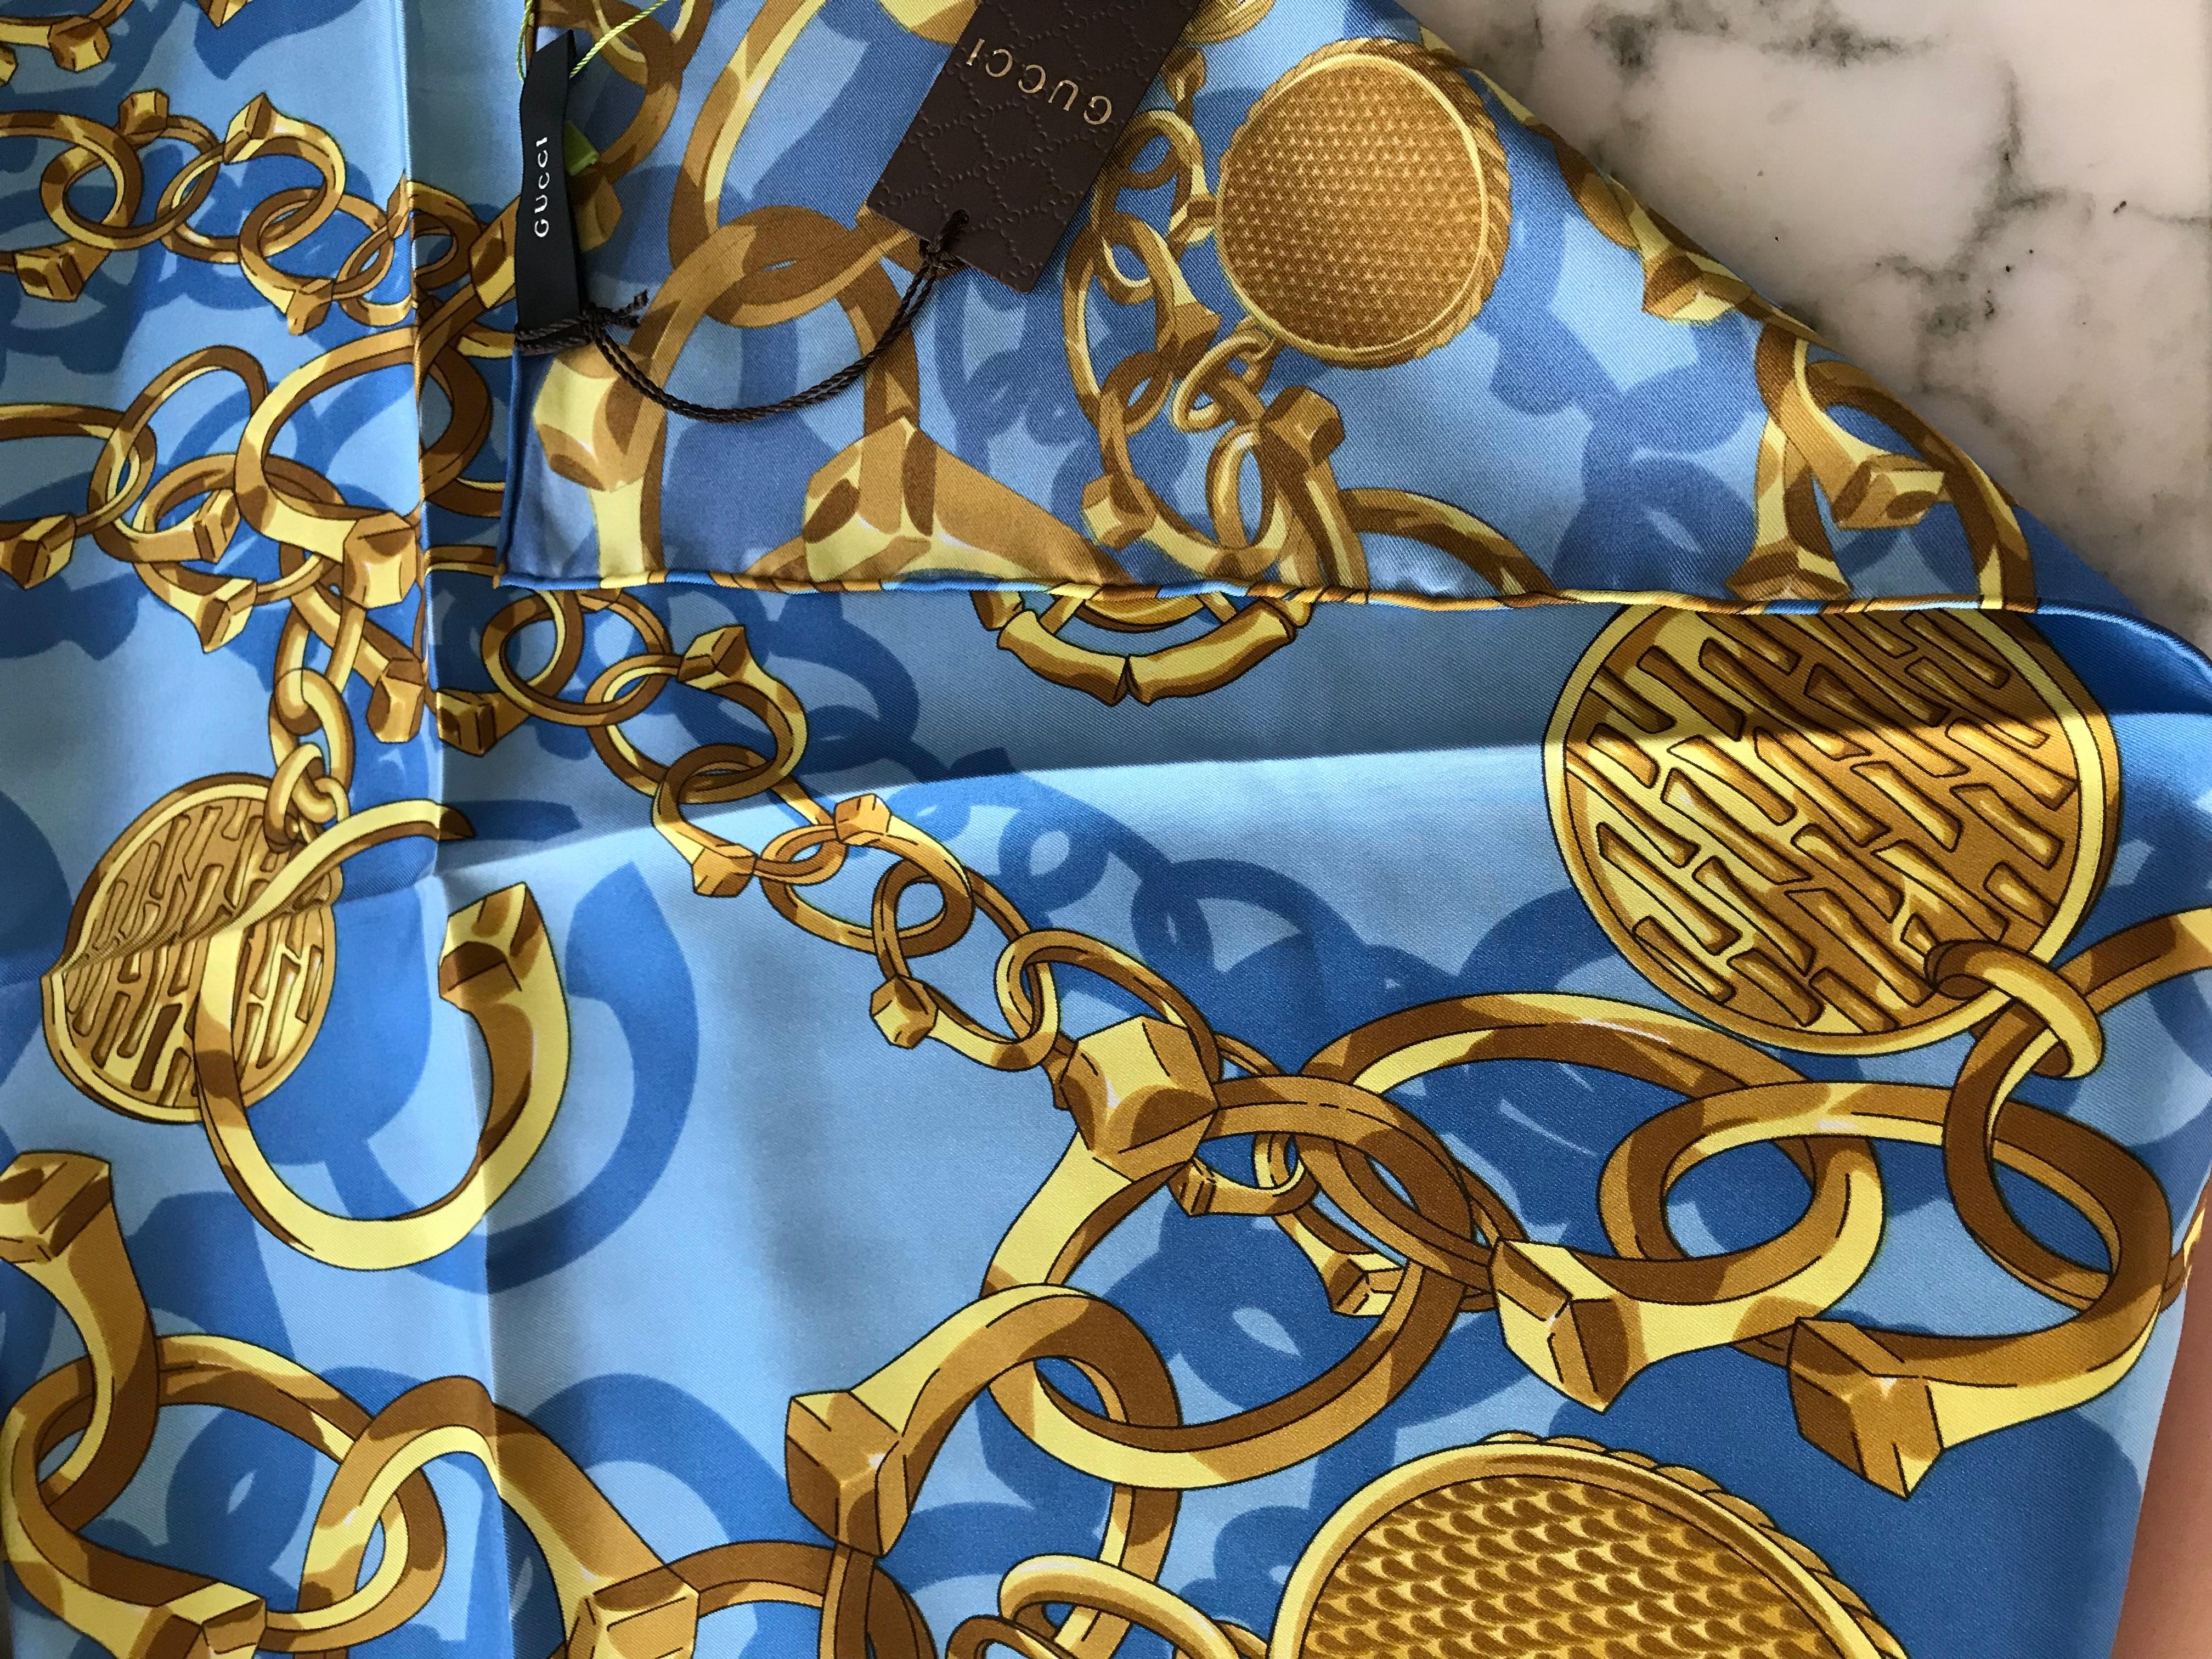 Dead stock Gucci ( 10 Jahre alt) Blau und Gold chainlink print Seidenschal mit Handstich Saum.
Der Schal ist in ausgezeichnetem Zustand.  
24